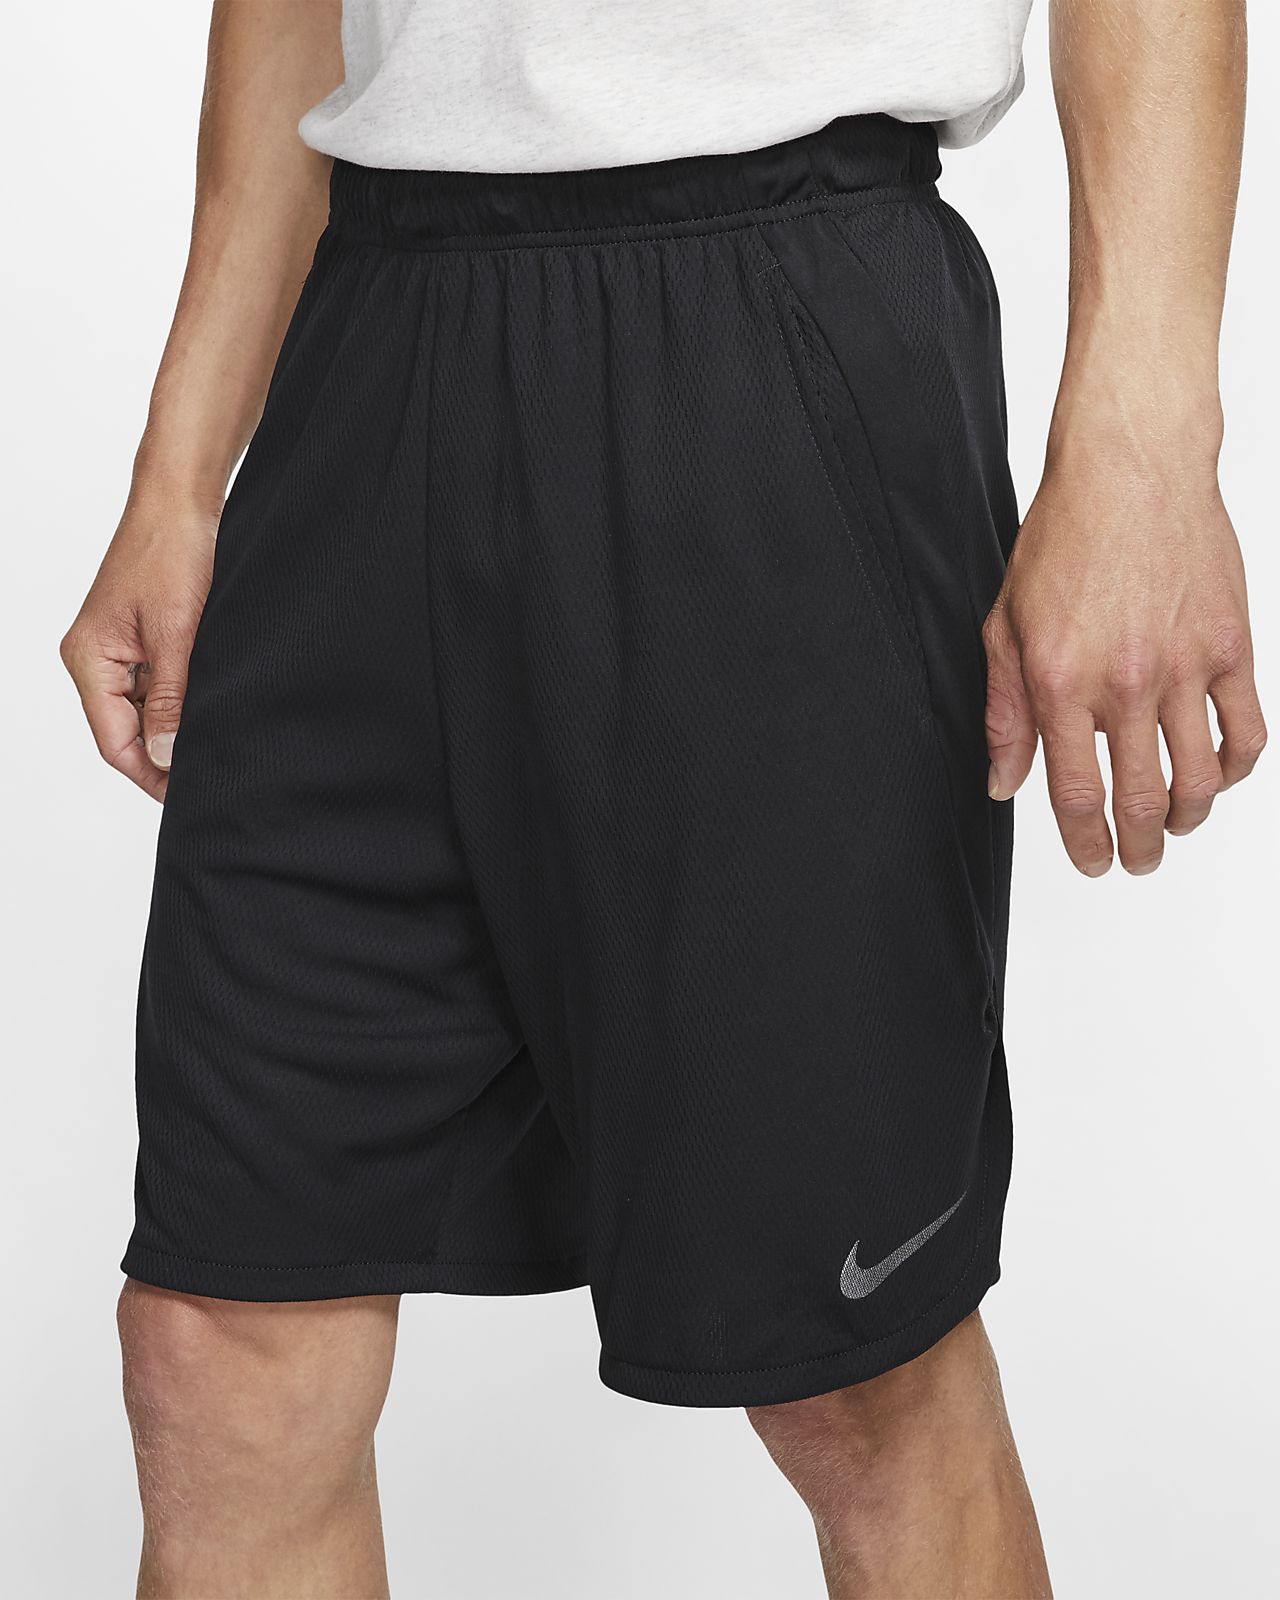 Nike Dri Fit Shorts Size Chart